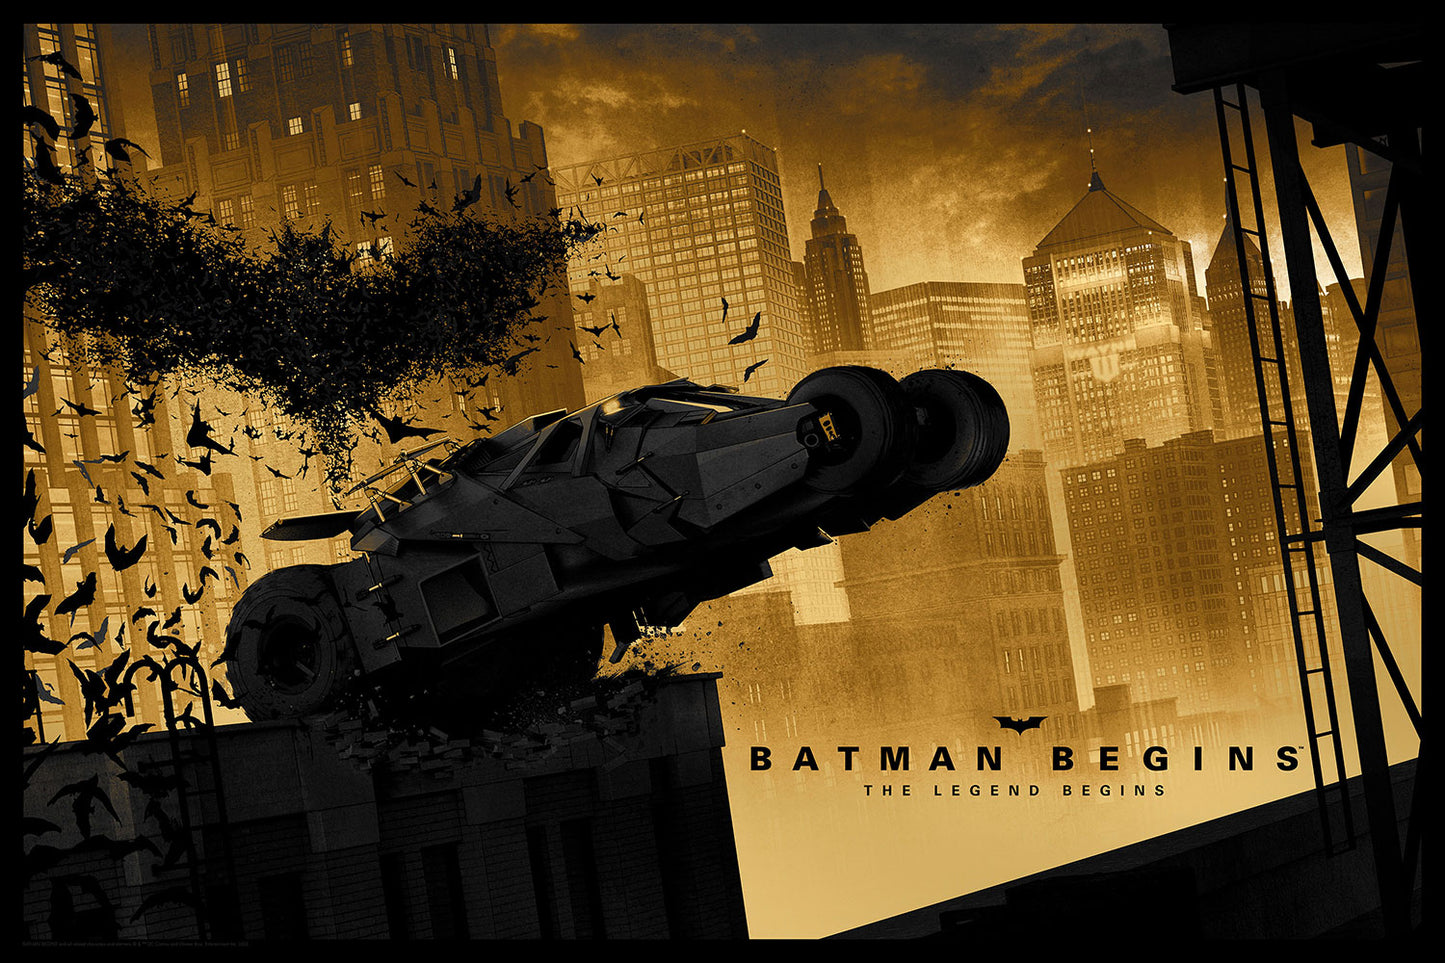 Matt Ferguson "Batman Begins" Variant